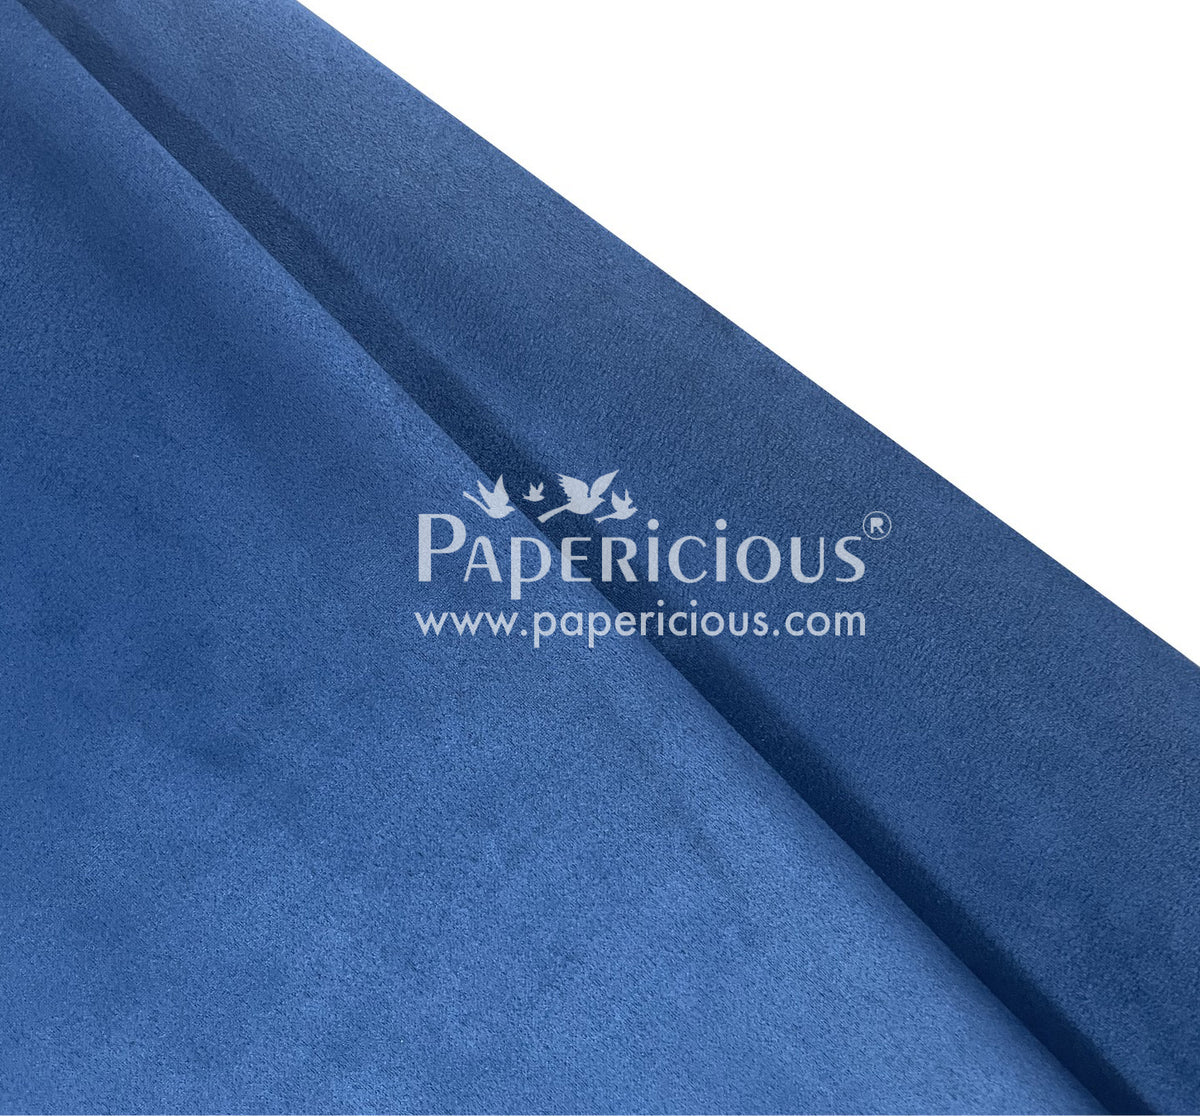 PAPERICIOUS - Suede Premium Fabric - Peacock Blue